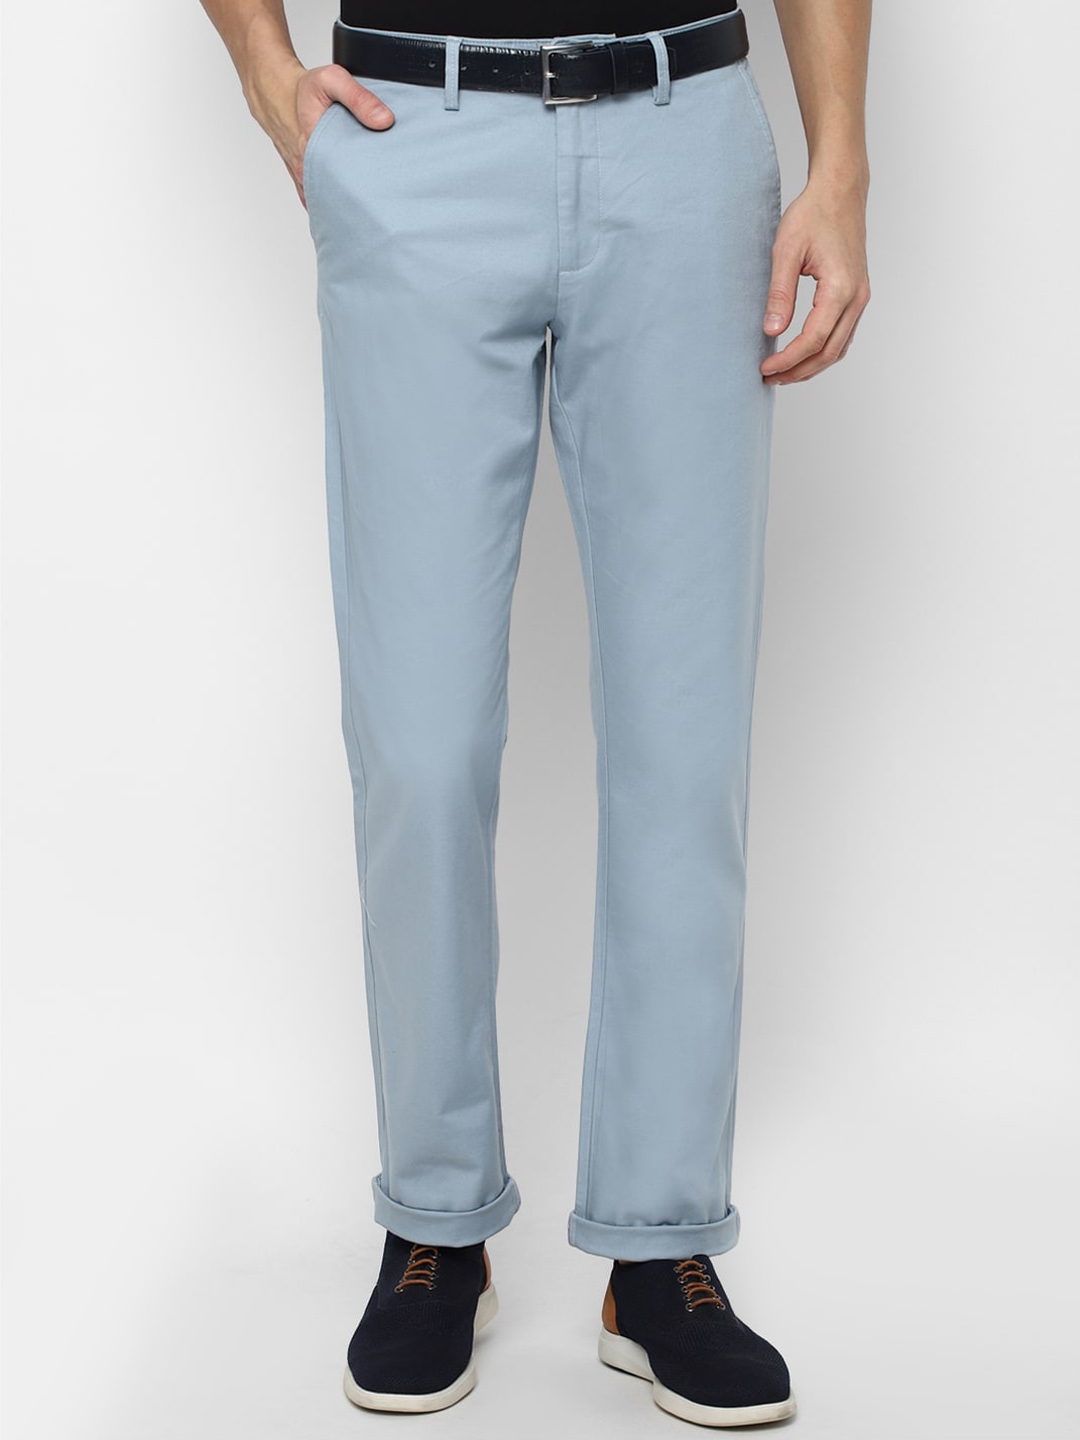 Buy Allen Solly Men Blue Trousers - Trousers for Men 17440816 | Myntra